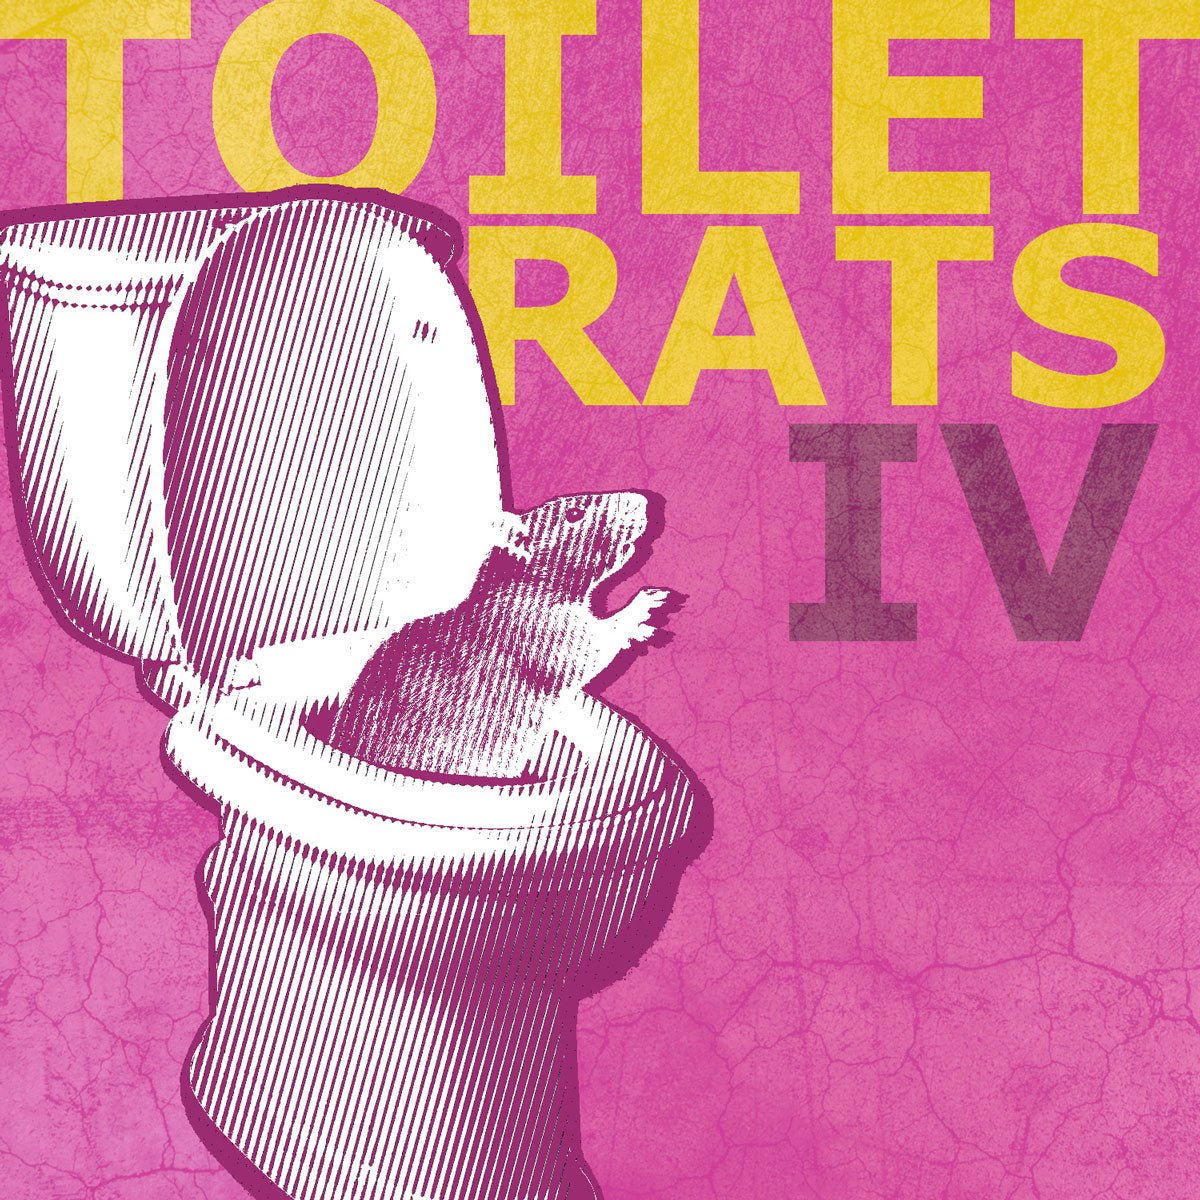 Toilet Rats: Toilet Rats IV: Cassette - Steadfast Records